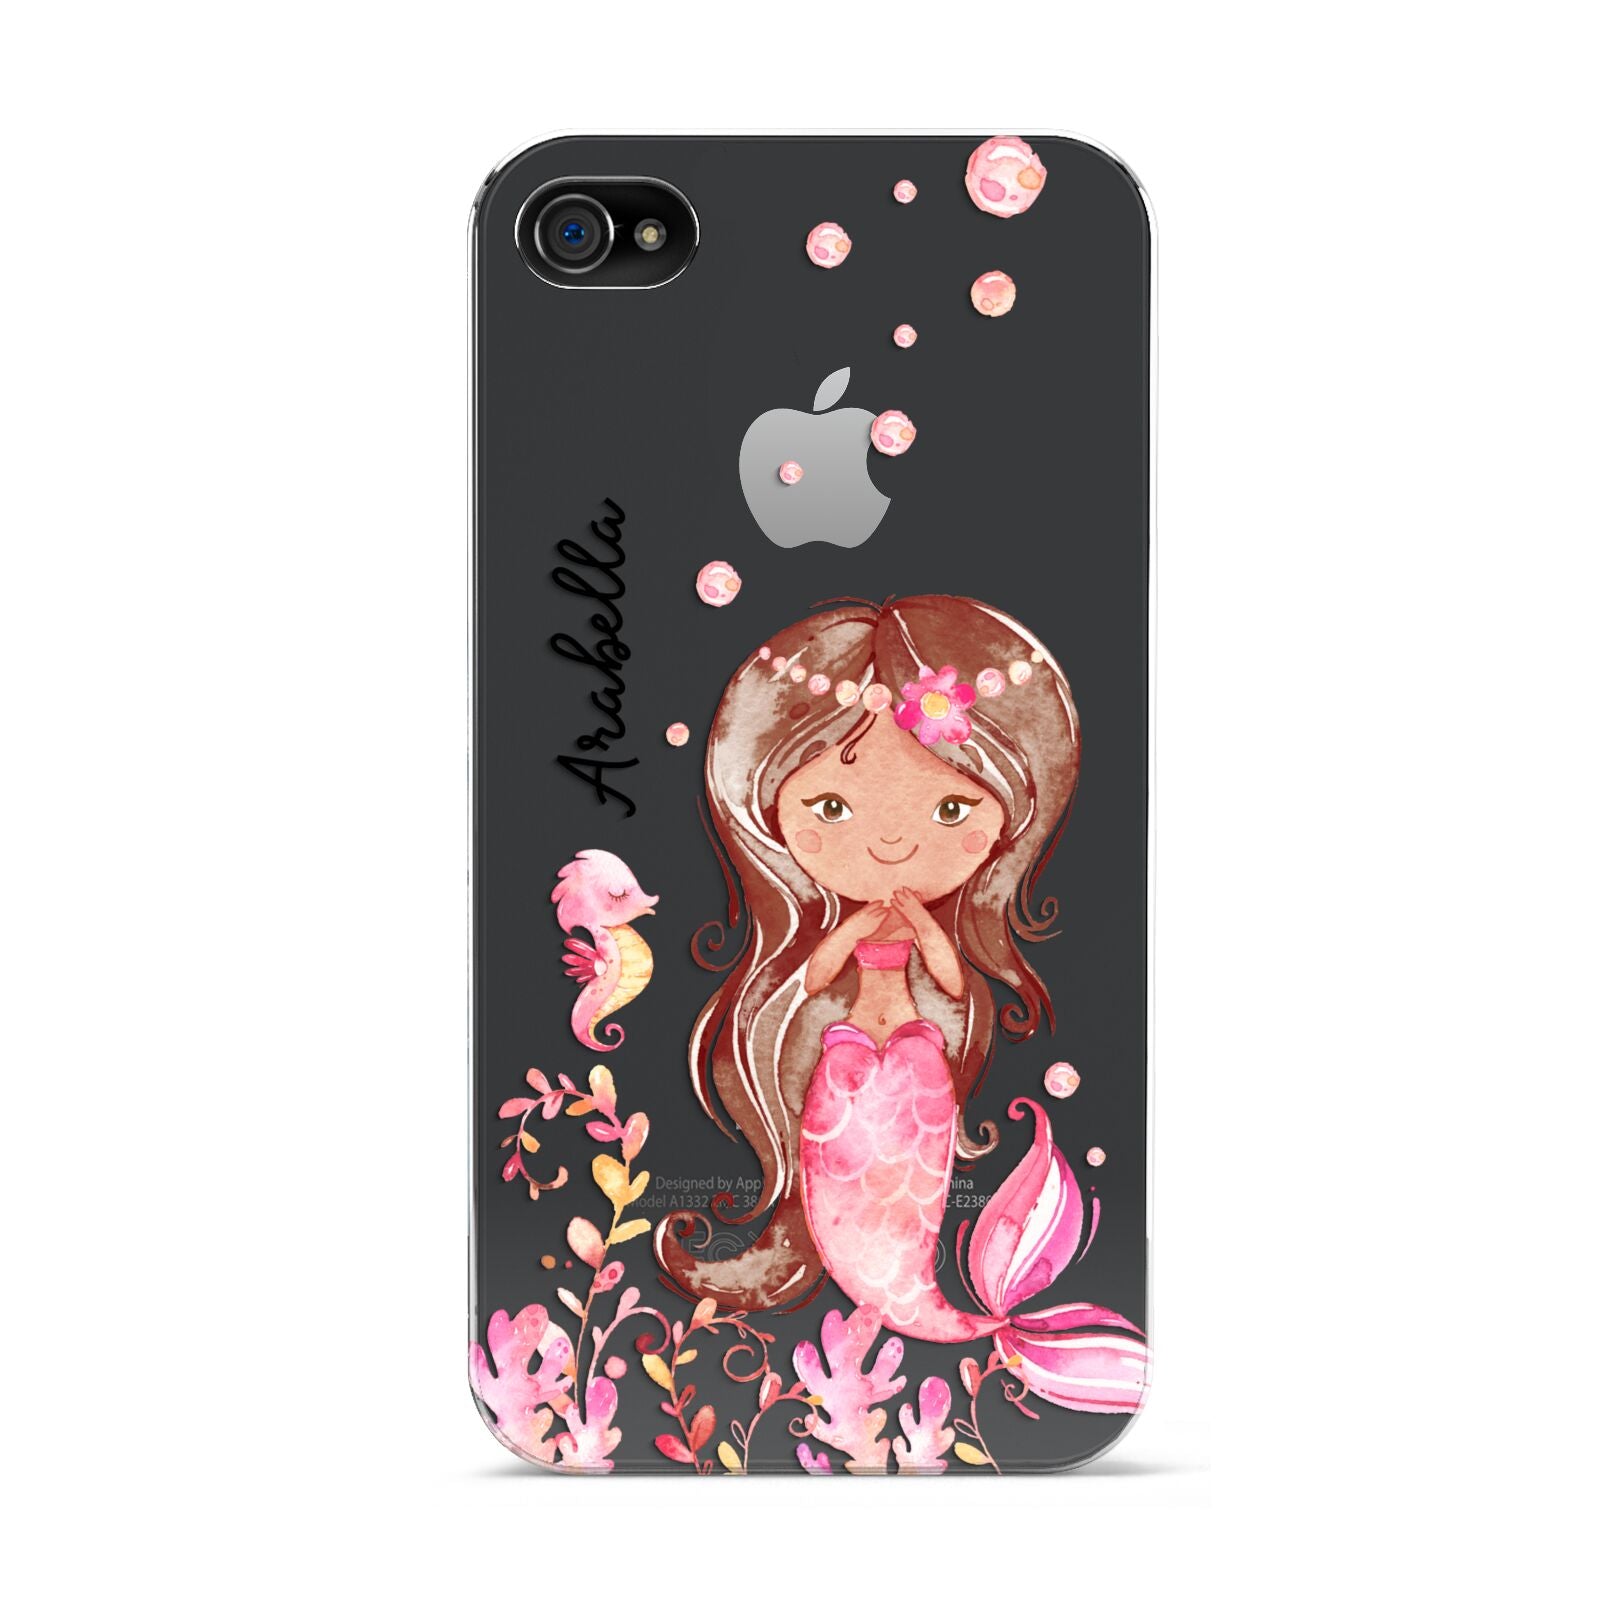 Personalised Pink Mermaid Apple iPhone 4s Case